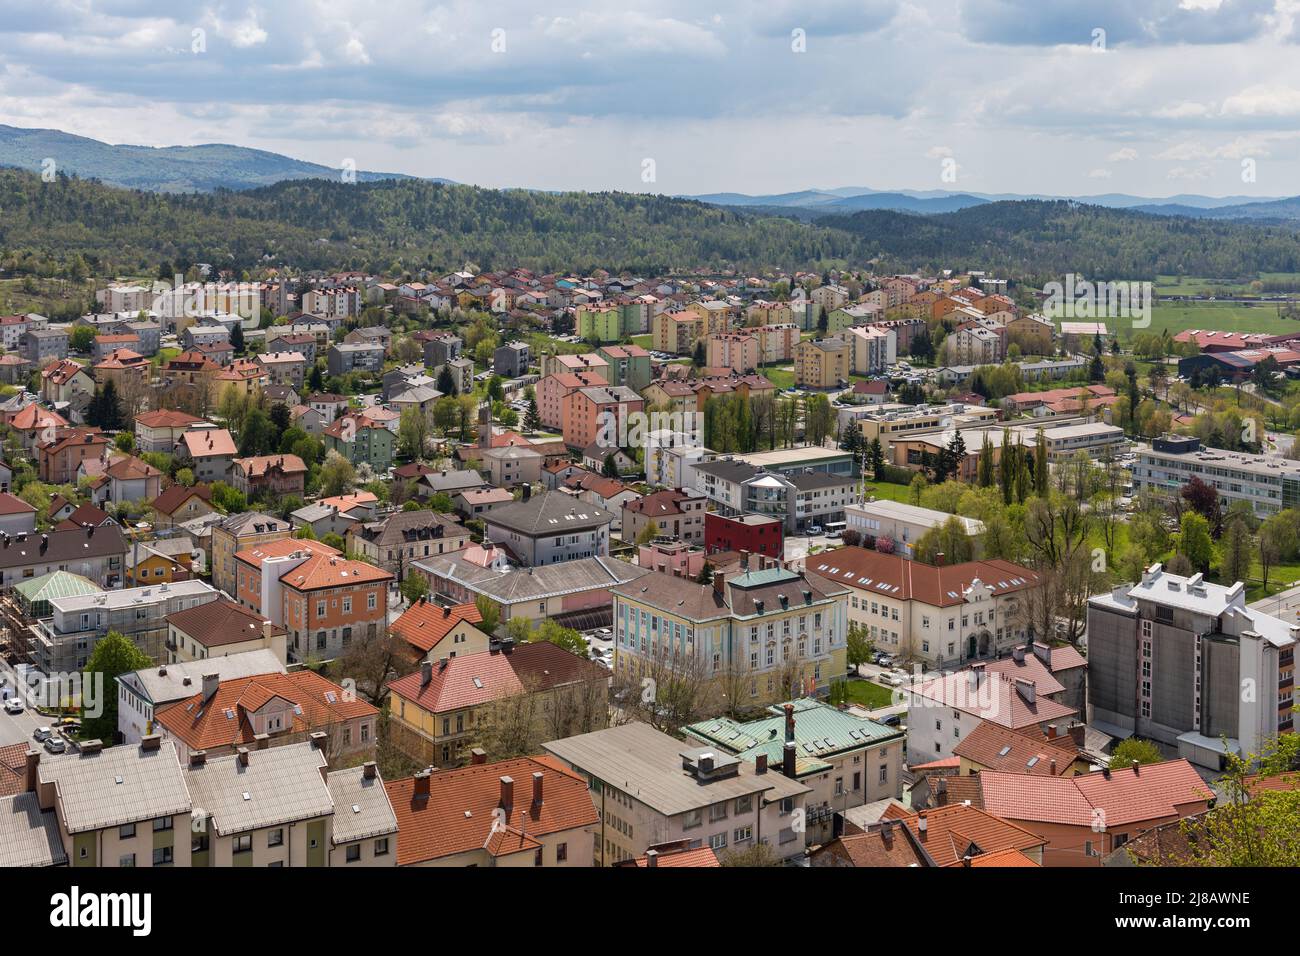 Aerial view of Postojna, Slovenia Stock Photo